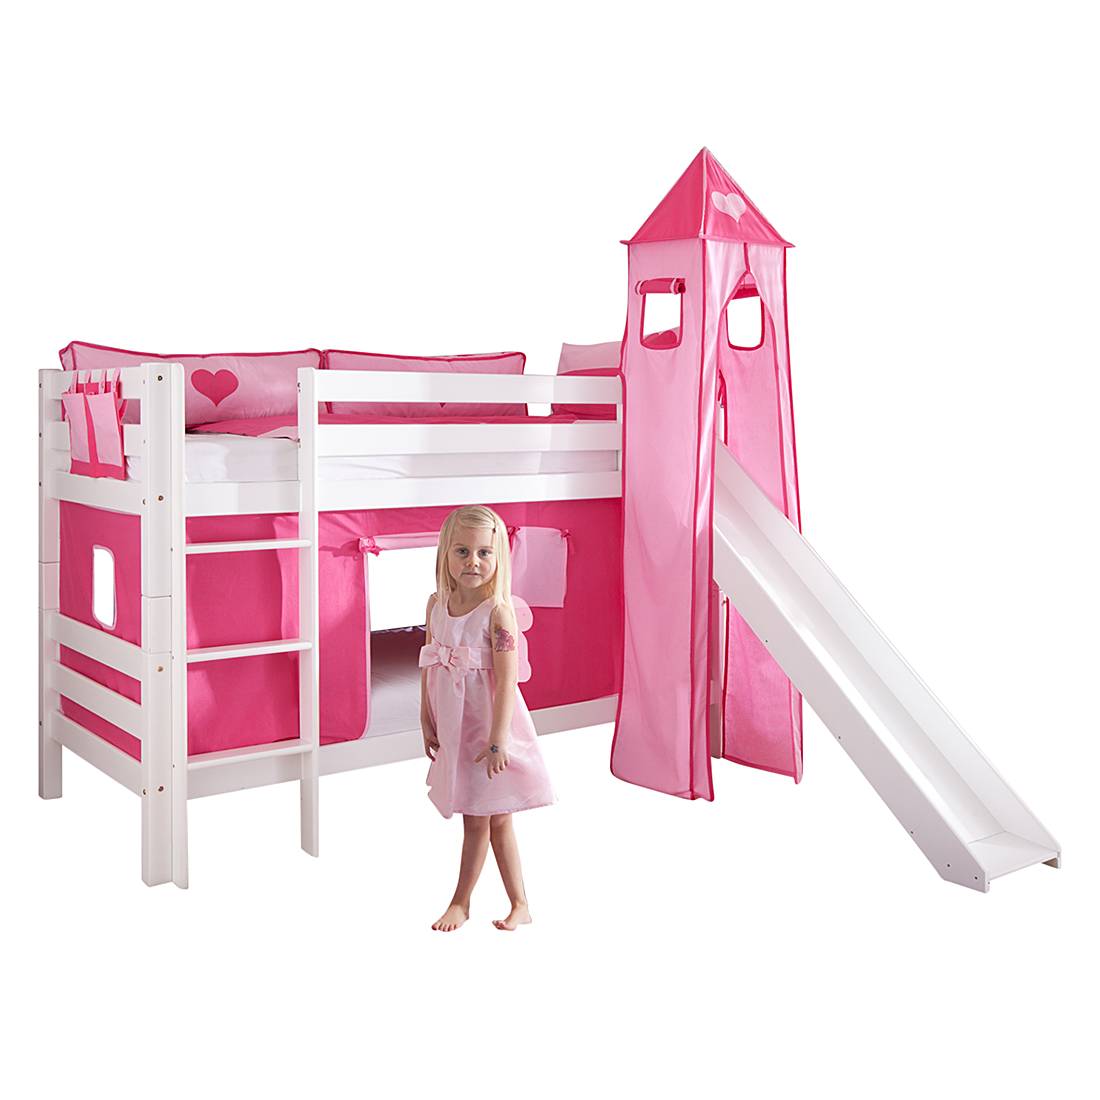 Spielbett Beni - mit Rutsche, Vorhang, Turm und Tasche - Buche massiv weiß lackiert/Textil pink-herz, Relita